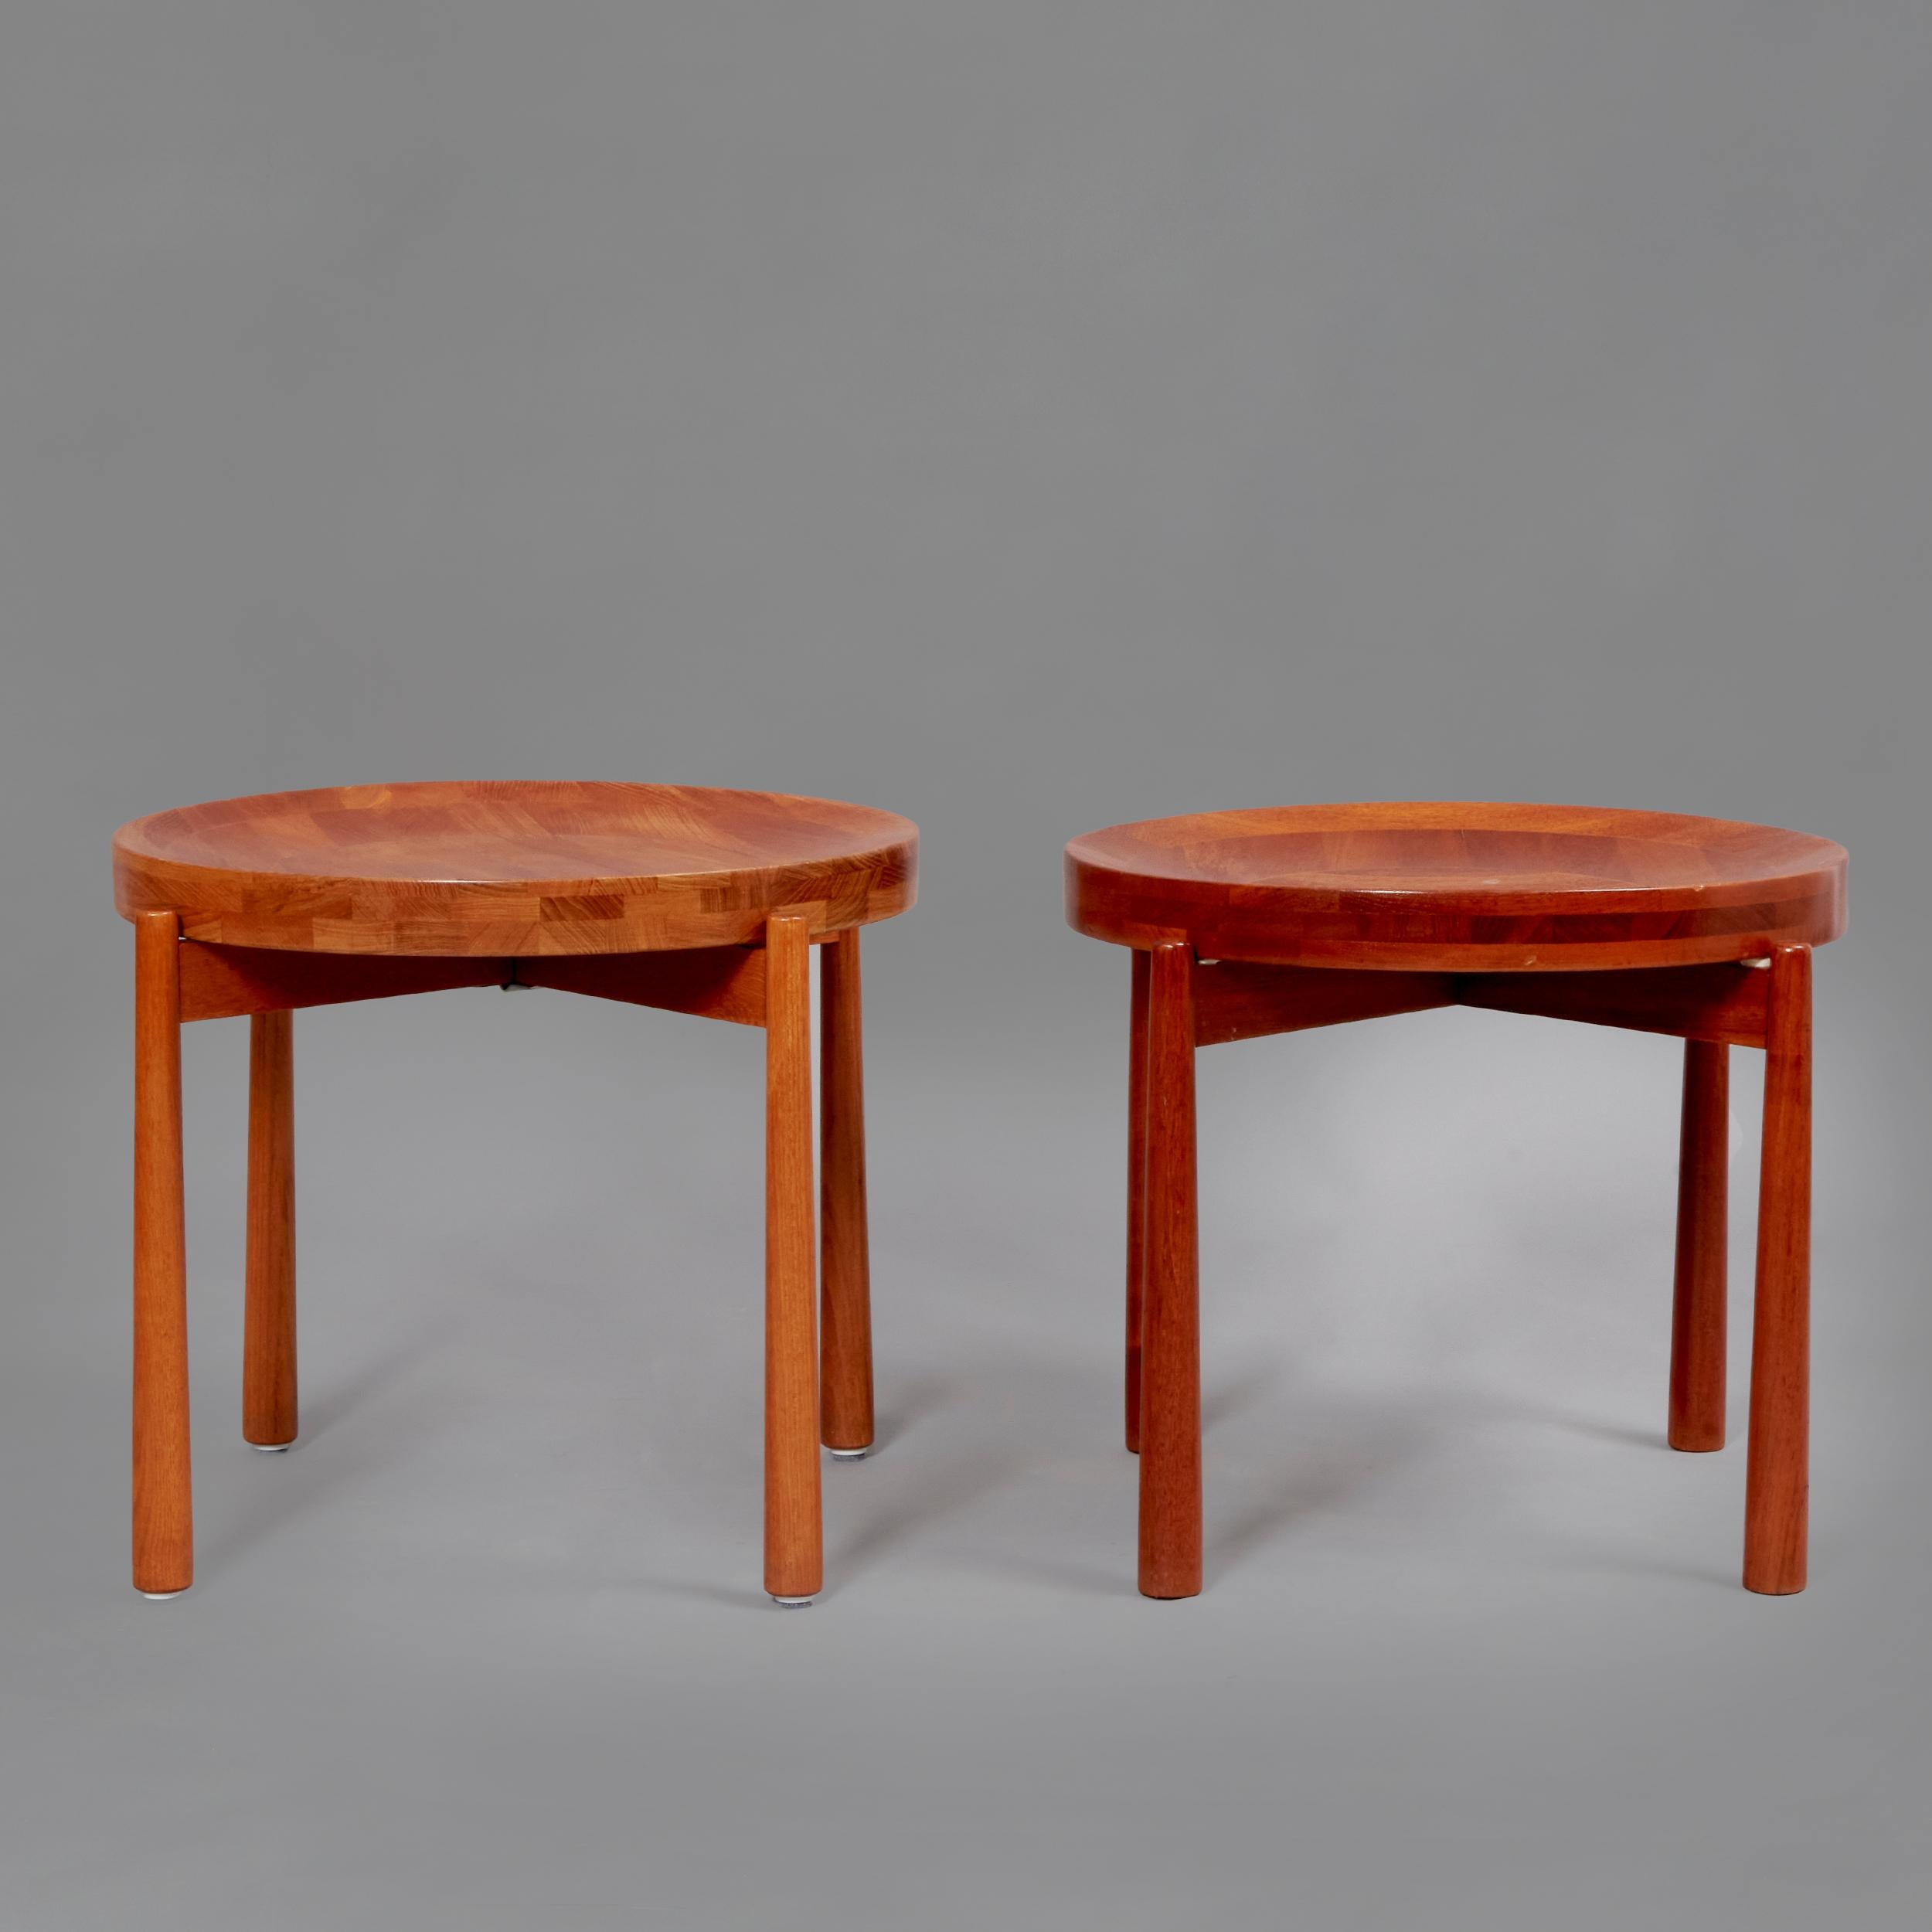 Table d'appoint en bois de teck conçue par Jens Quistgaard. Danemark, années 50
Jens quistgaard est un sculpteur et designer danois. Connu internationalement pour avoir popularisé le design scandinave aux États-Unis, il a travaillé pour Dansk